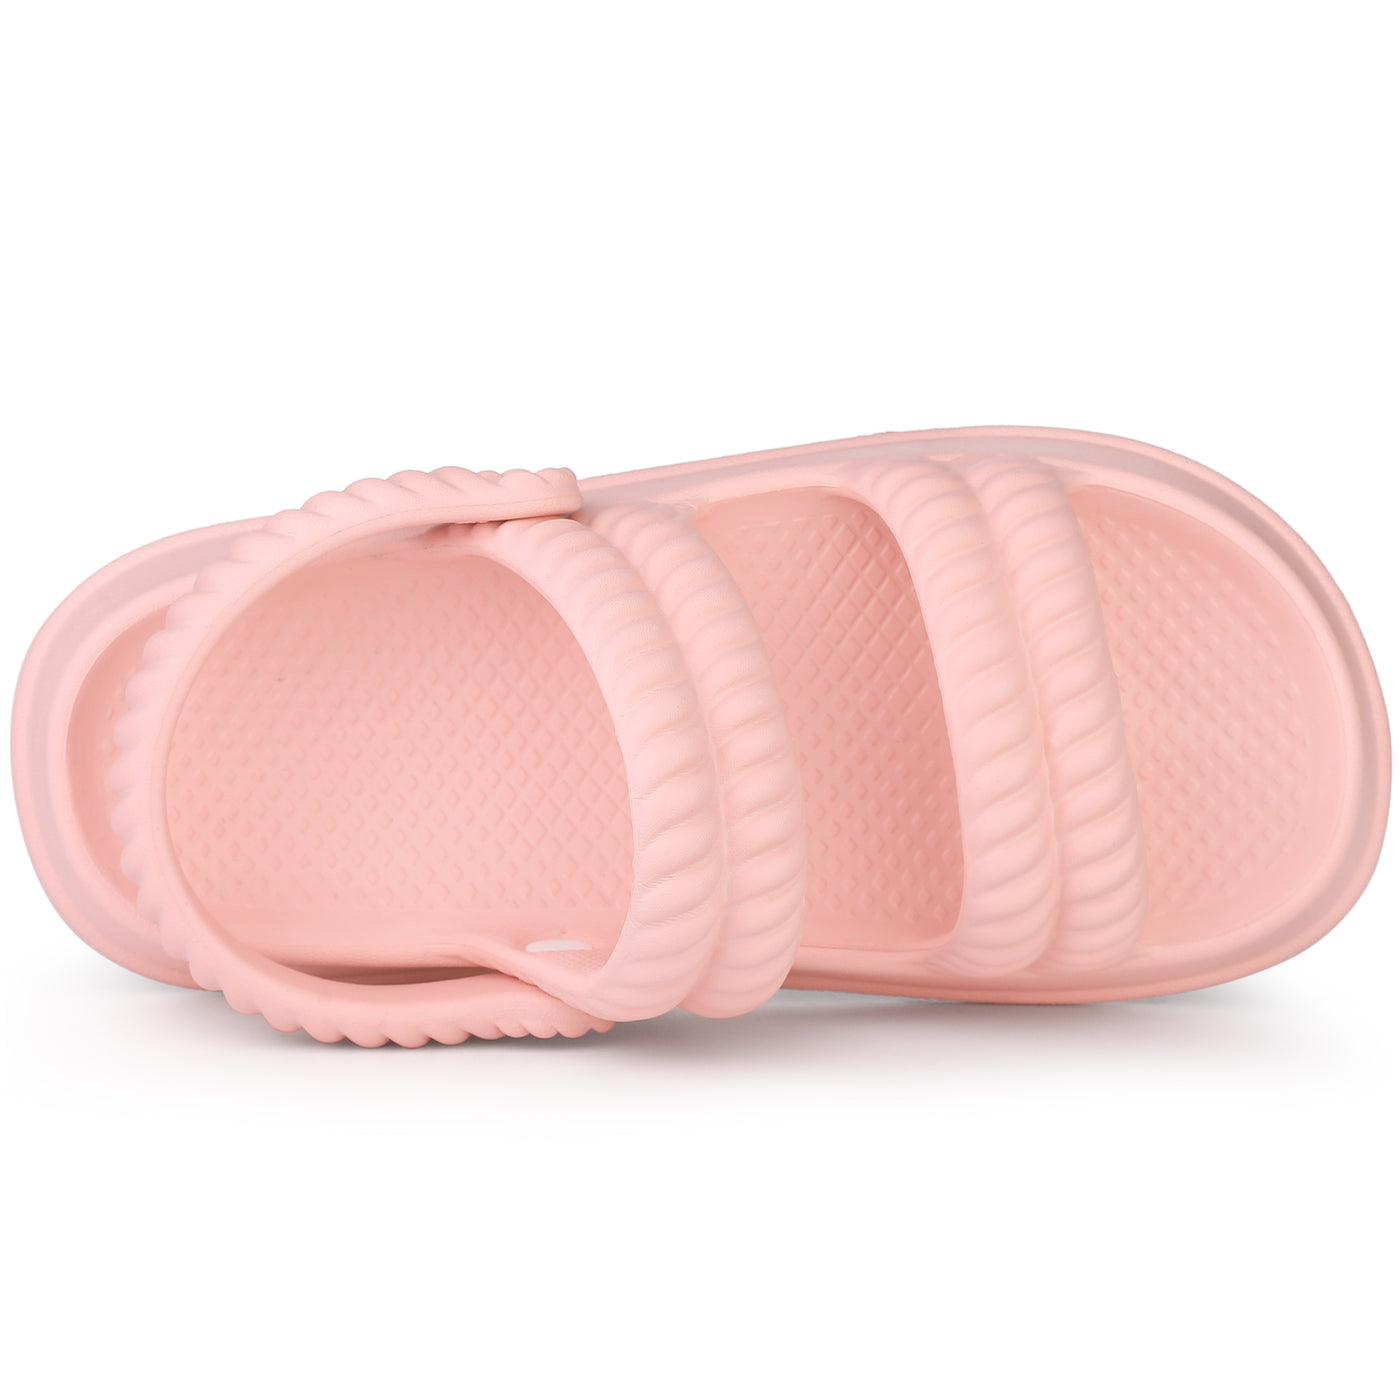 Allegra K Women's Slide Sandals Two-Way Wear Light Weight Slingback Flat Sandals